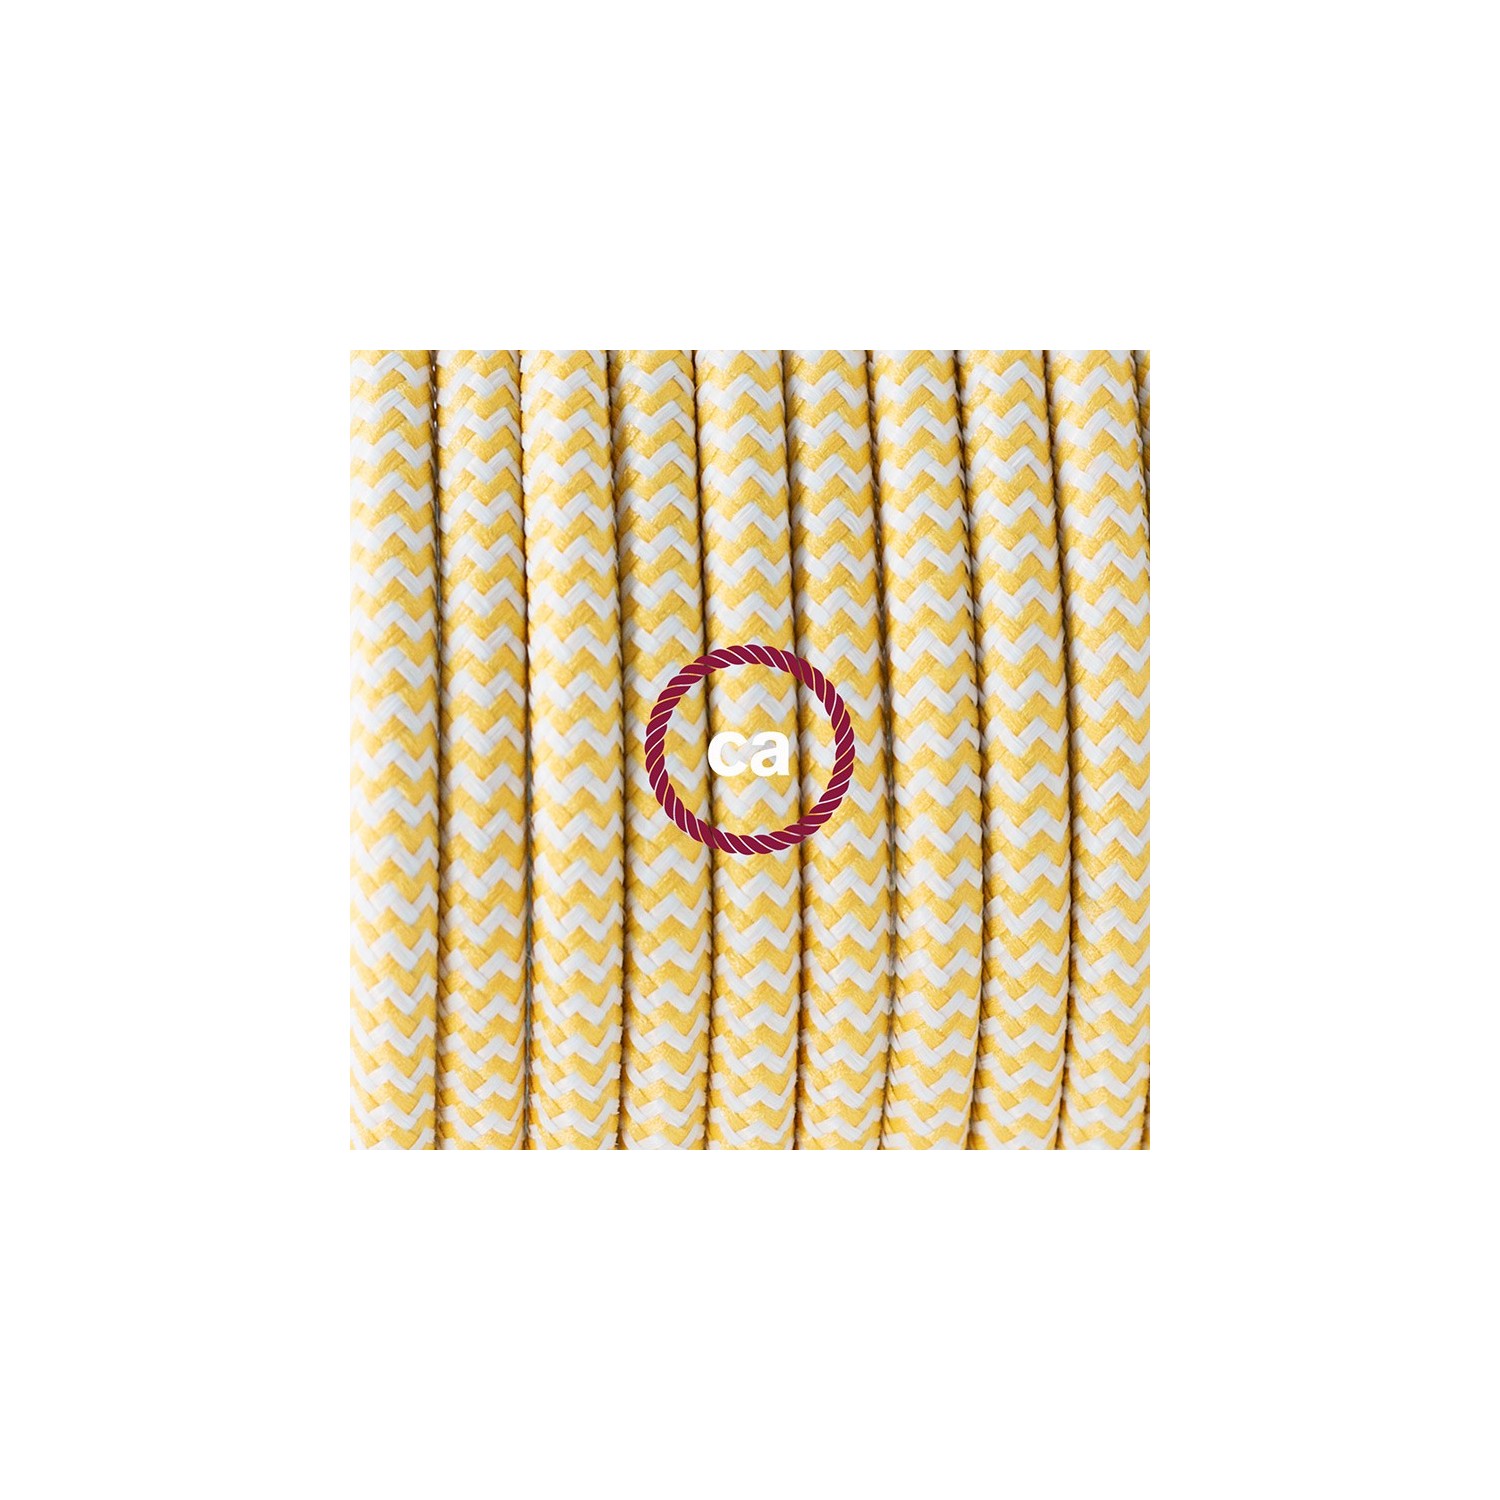 Zuleitung für Tischleuchten RZ10 Zick-Zack Weiß Gelb Seideneffekt 1,80 m. Wählen Sie aus drei Farben bei Schalter und Stecke.